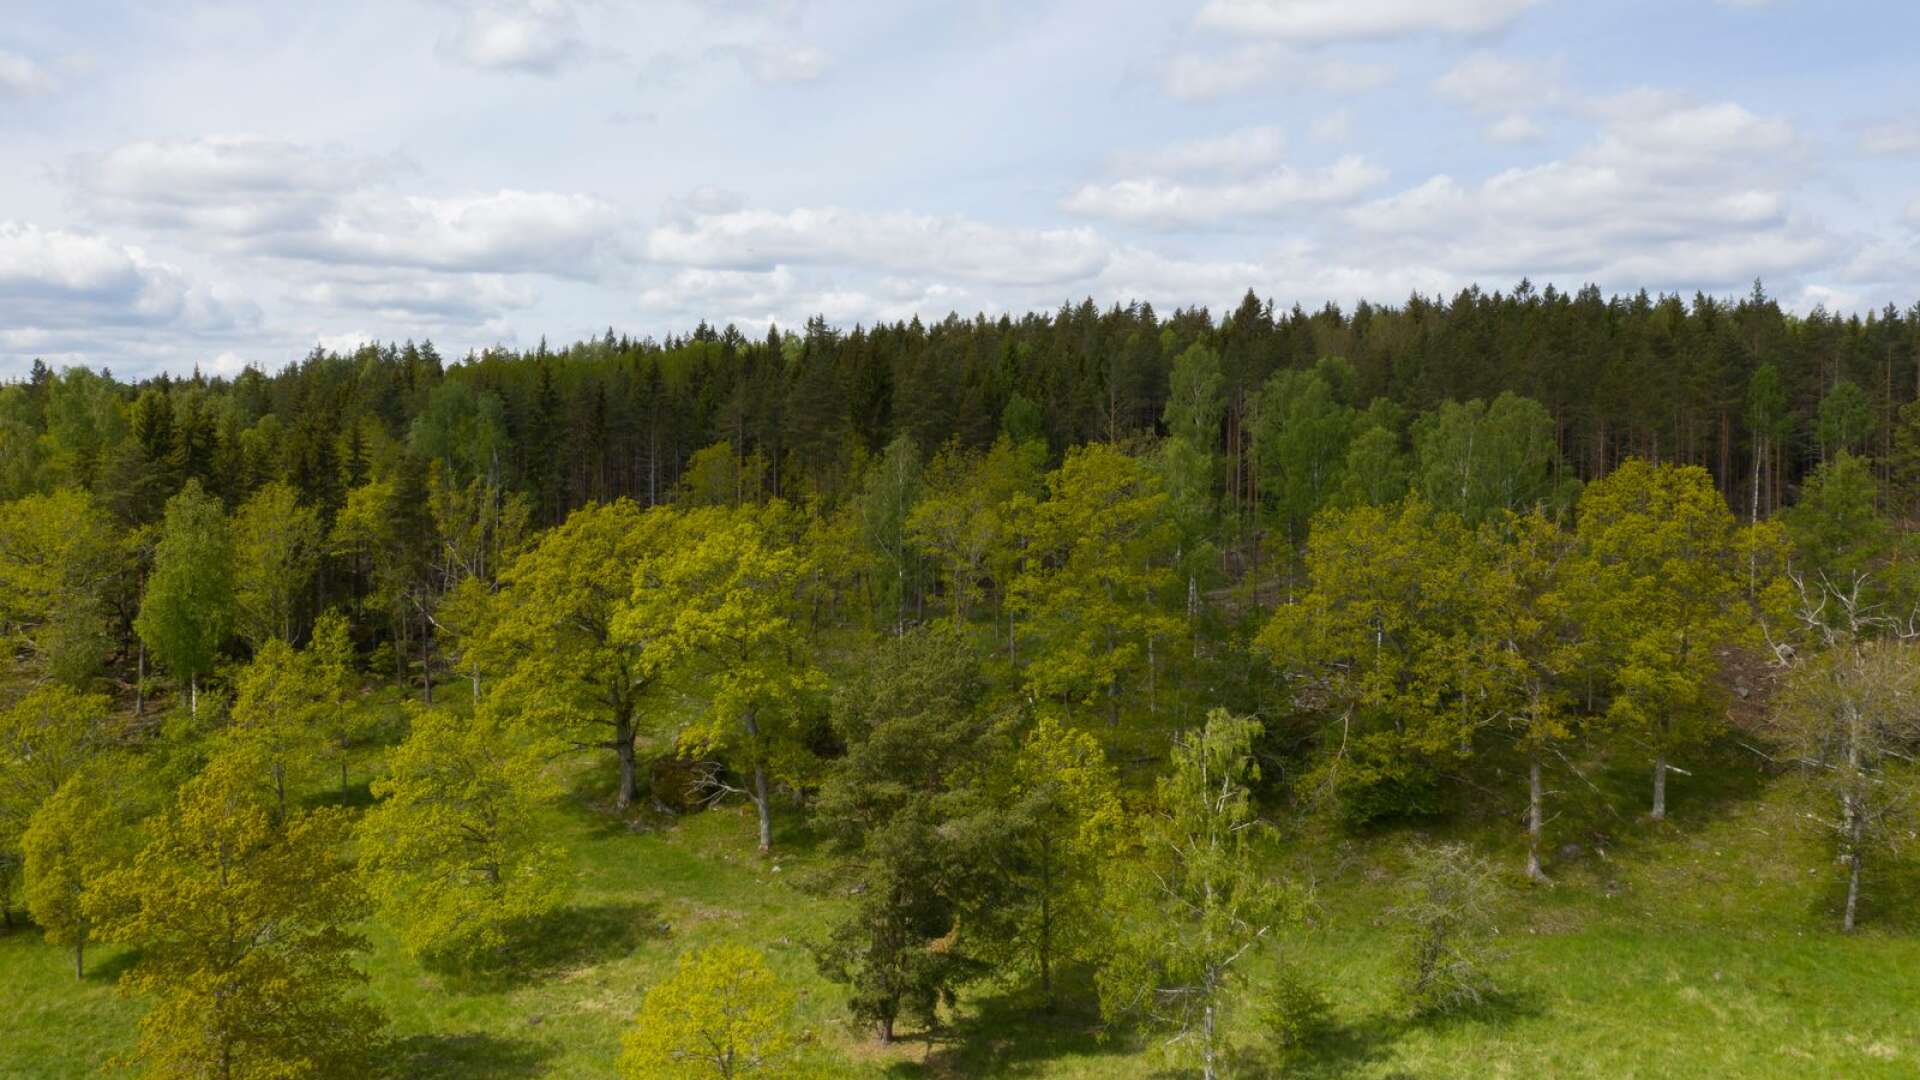 Det viktigaste är att vi undantar tillräckligt mycket, inklusive de skogar som ännu har kvar höga naturvärden, för att rädda den del av Jordens biologiska mångfald som hör hemma i vårt land, skriver Torbjörn Nilsson.